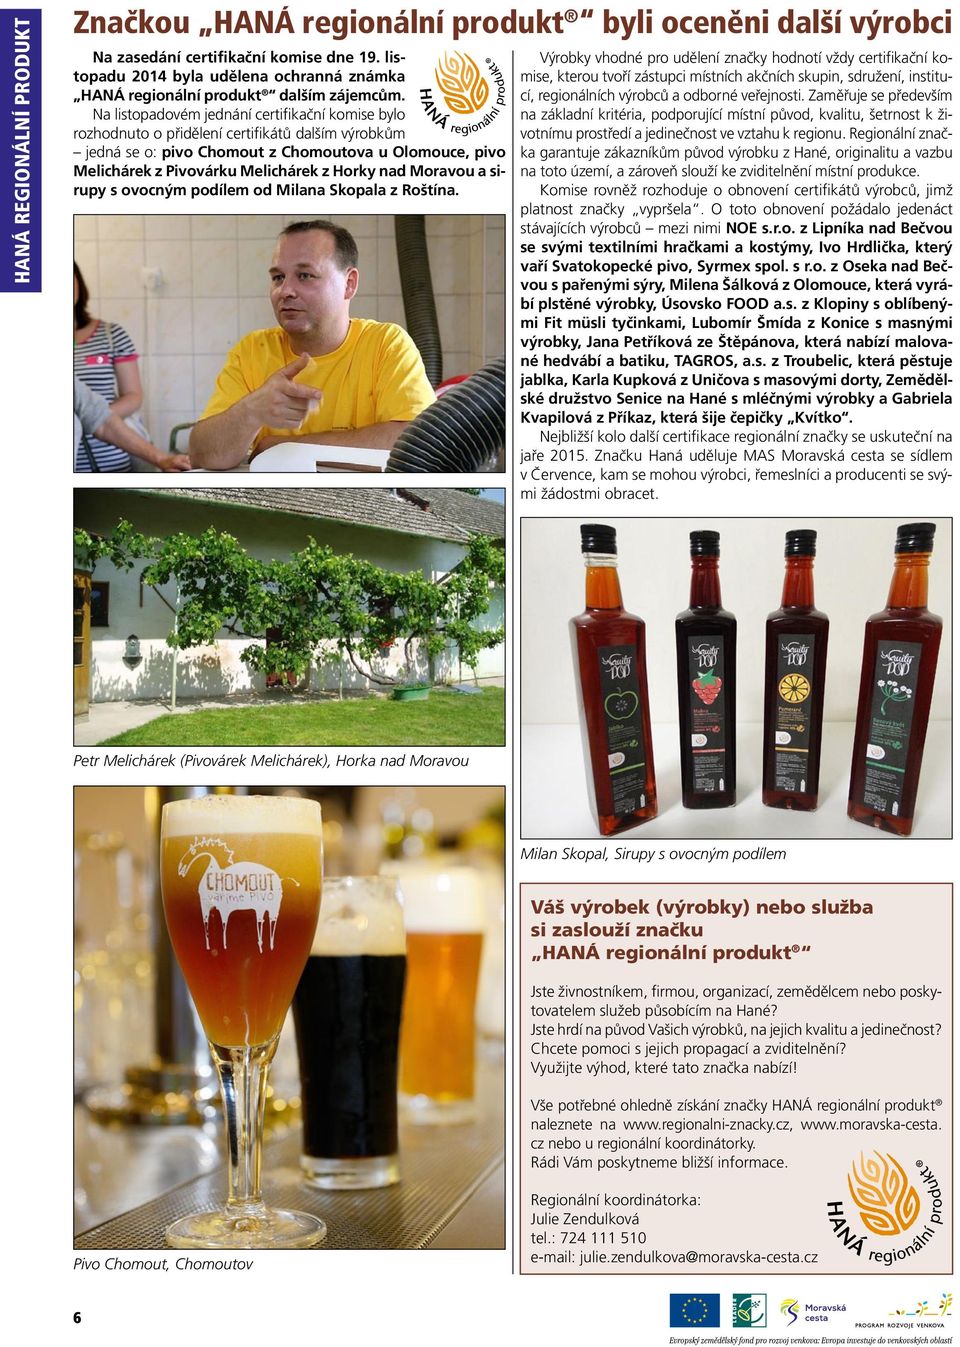 Na listopadovém jednání certifikační komise bylo rozhodnuto o přidělení certifikátů dalším výrobkům jedná se o: pivo Chomout z Chomoutova u Olomouce, pivo Melichárek z Pivovárku Melichárek z Horky